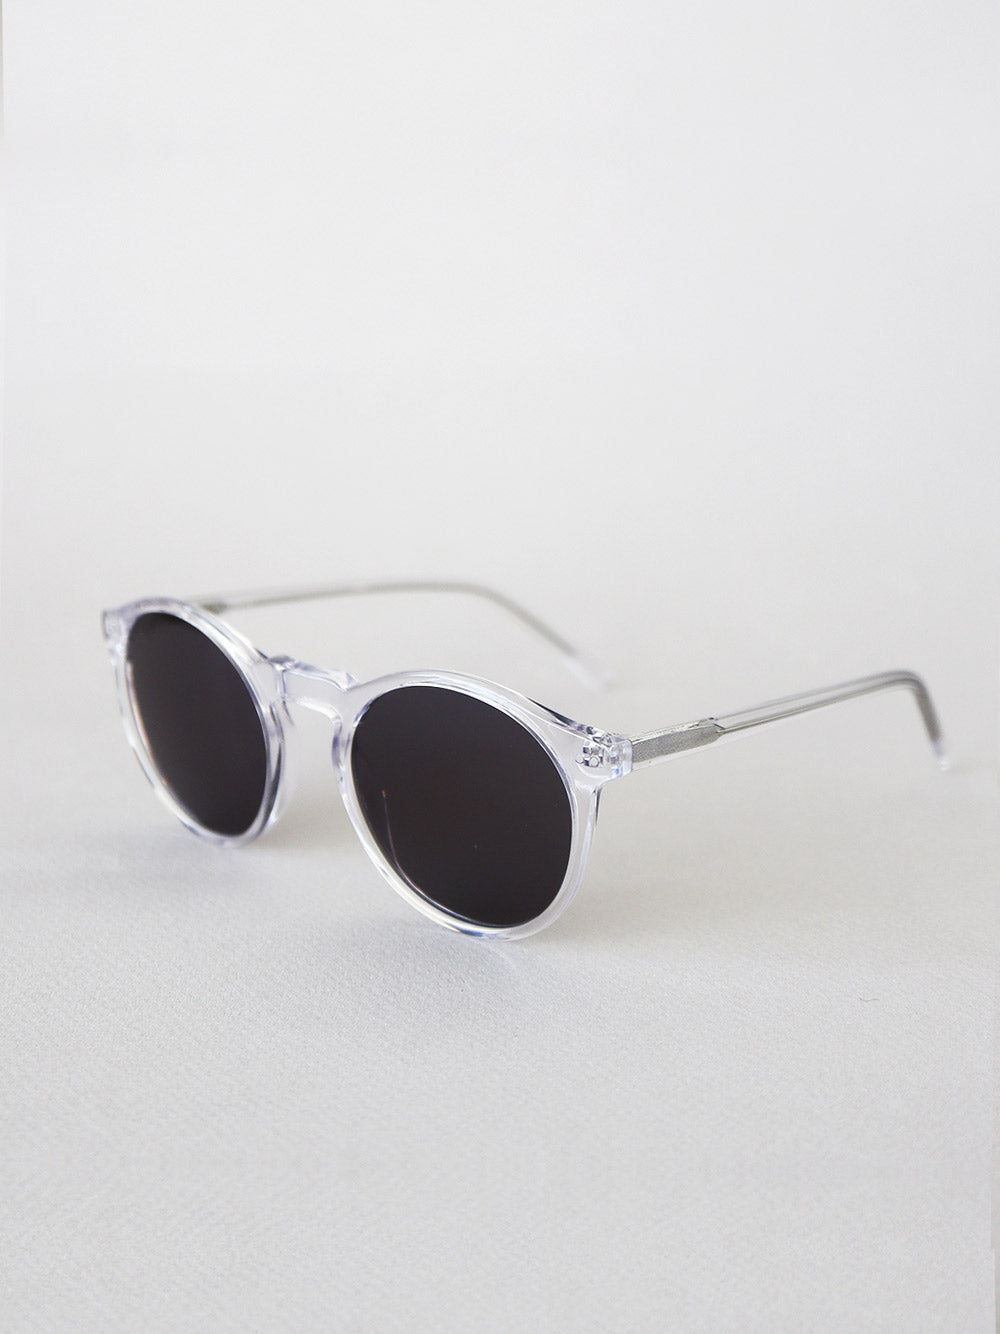 Fresh & modern sunglasses by danskk.